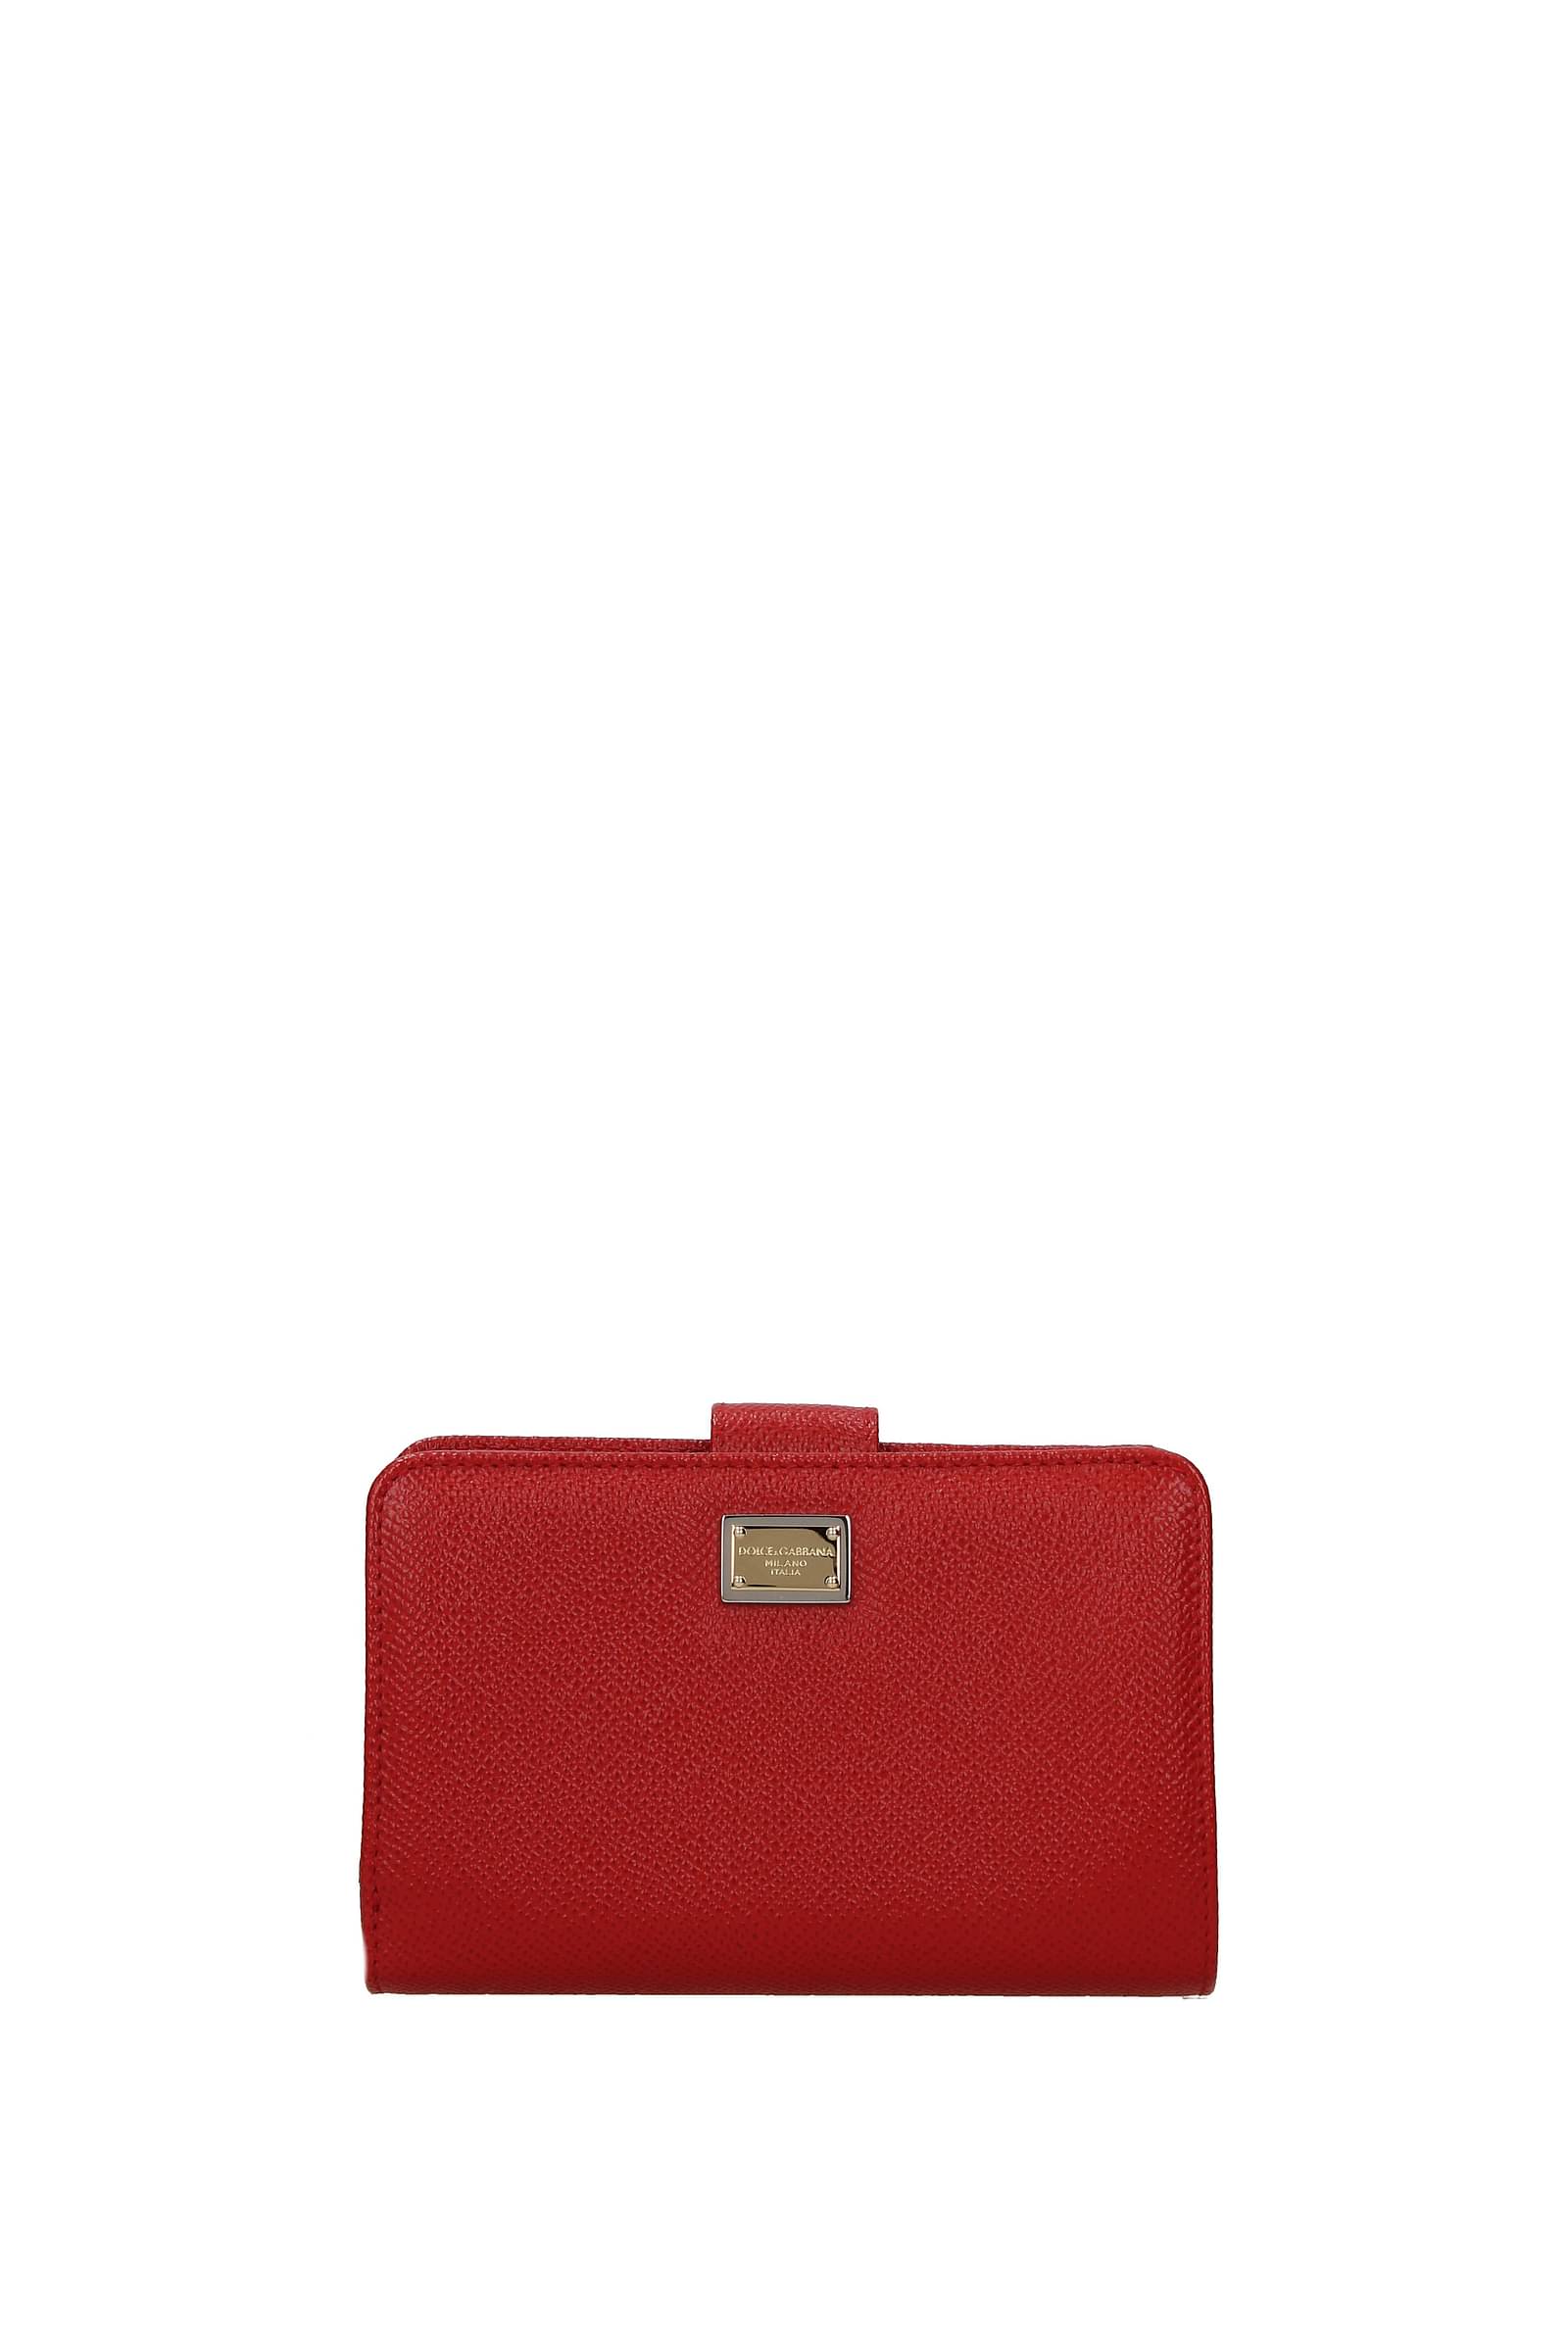 Wallets Dolce&Gabbana Women - Leather (BI0769A1001) | eBay